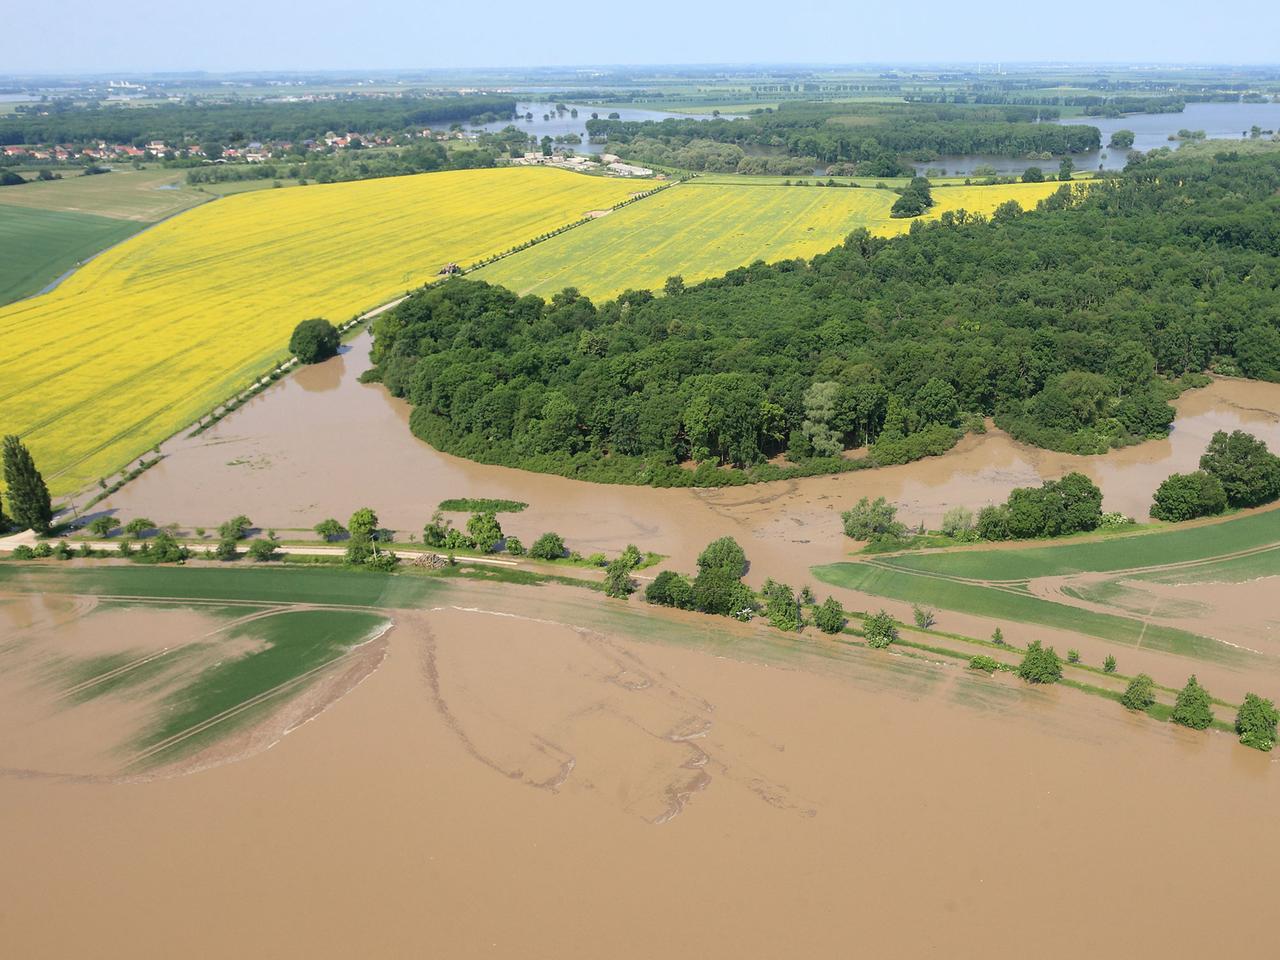 Überschwemmte Landschaft am Zusammenfluß von Saale und Elbe bei Groß Rosenburg (Sachsen-Anhalt), aufgenommen am 09.06.2013. Die Hochwassersituation an der Elbe spitzt sich weiter zu.